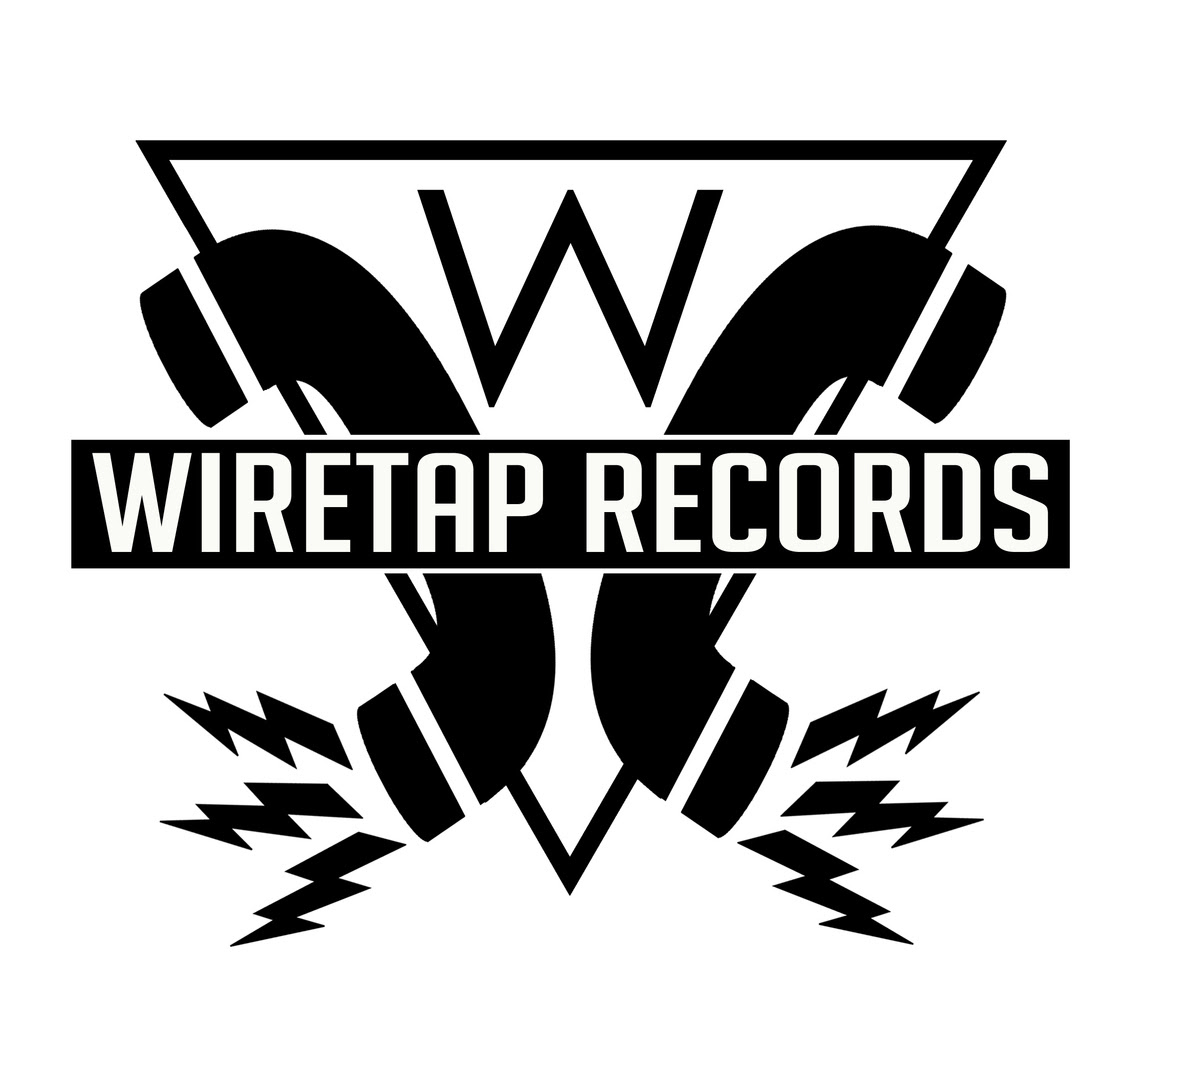 wiretap records logo white